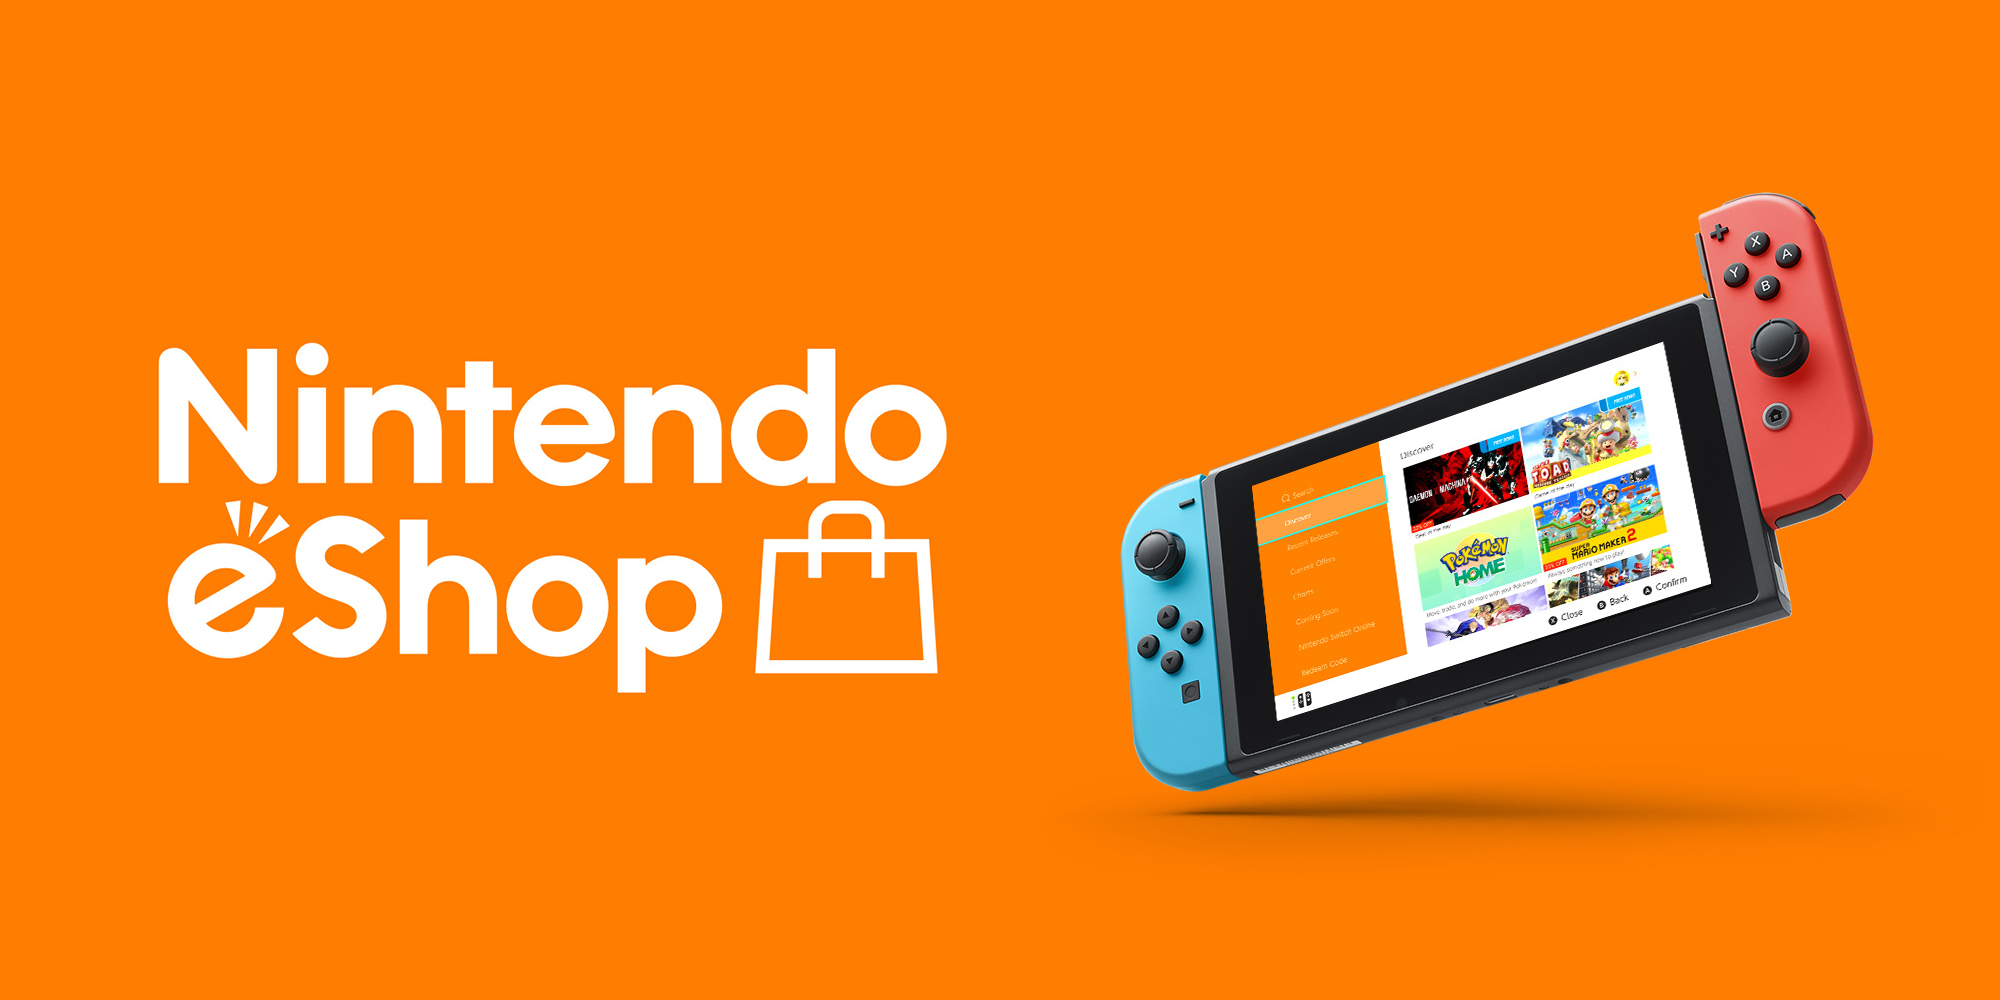 Nintendo eShop Prepaid Card €15 NL Key 19.93 $